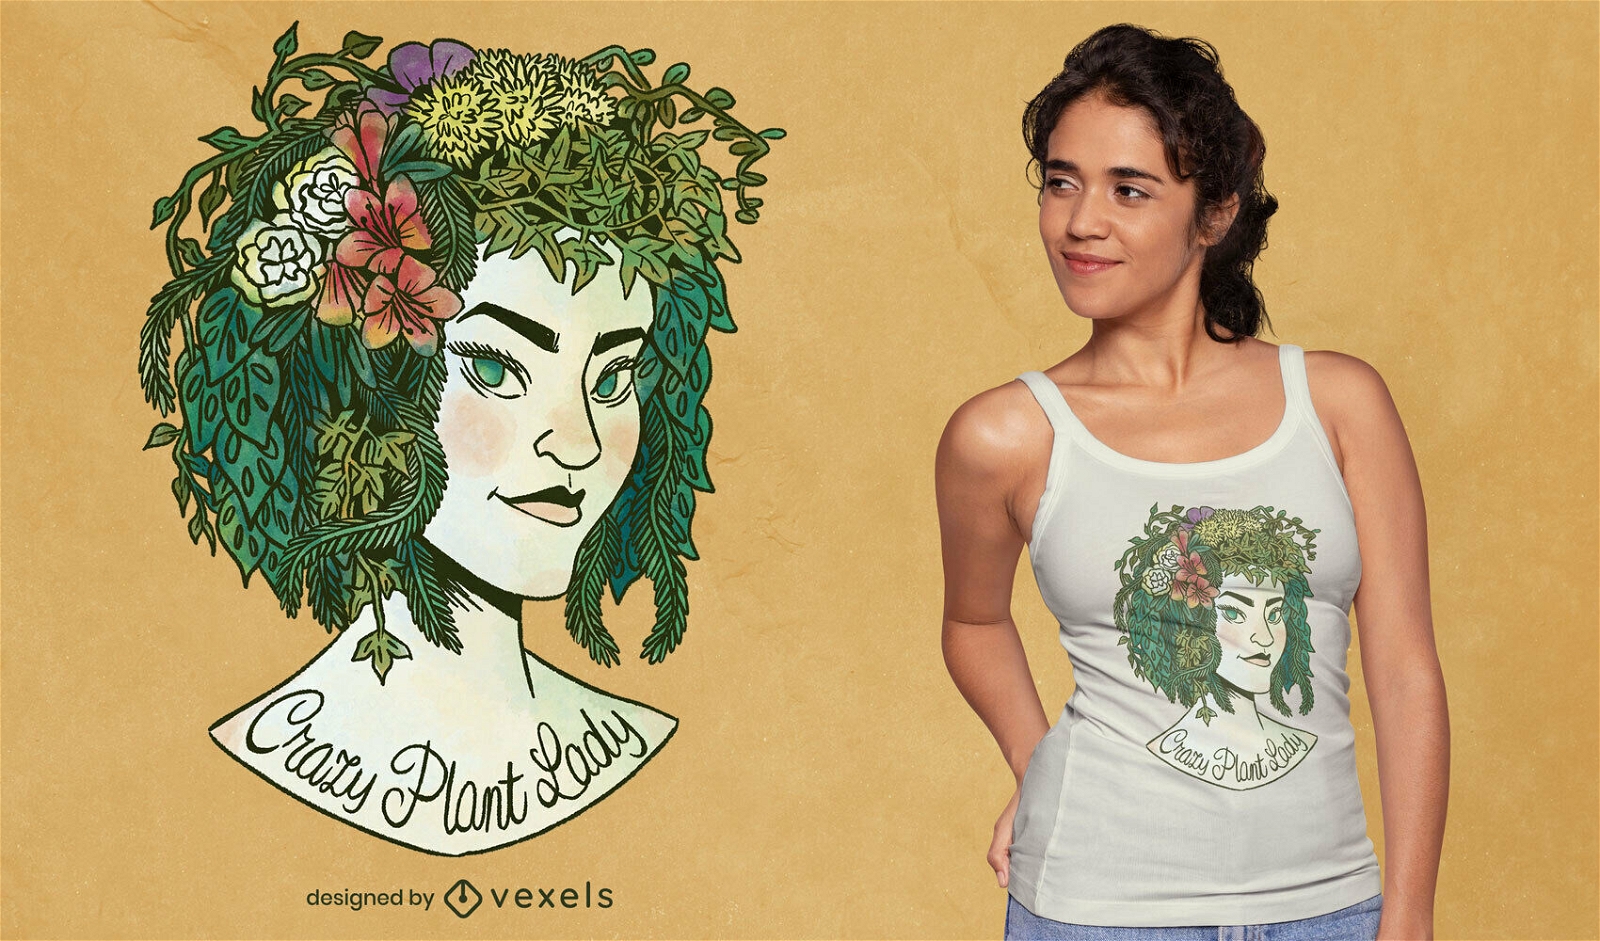 T-shirt da natureza da mulher com cabelo de planta psd